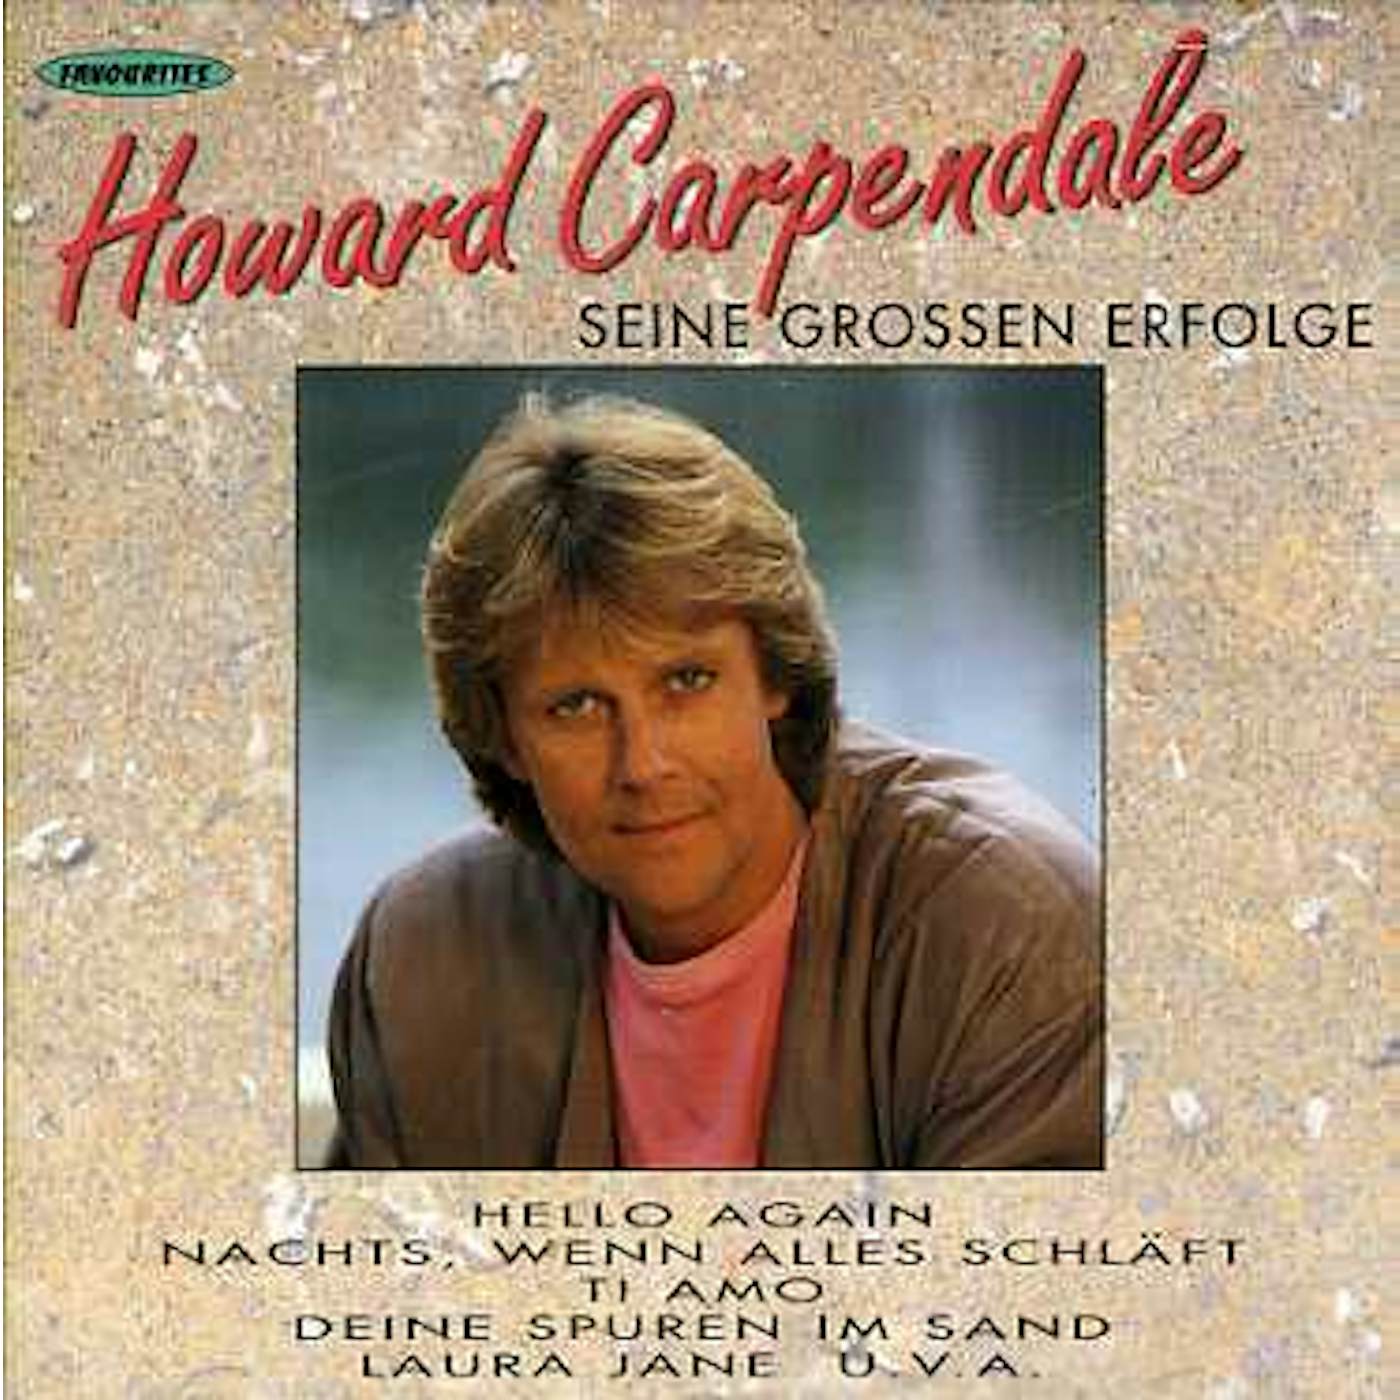 Howard Carpendale GROSSEN ERFOLGE CD